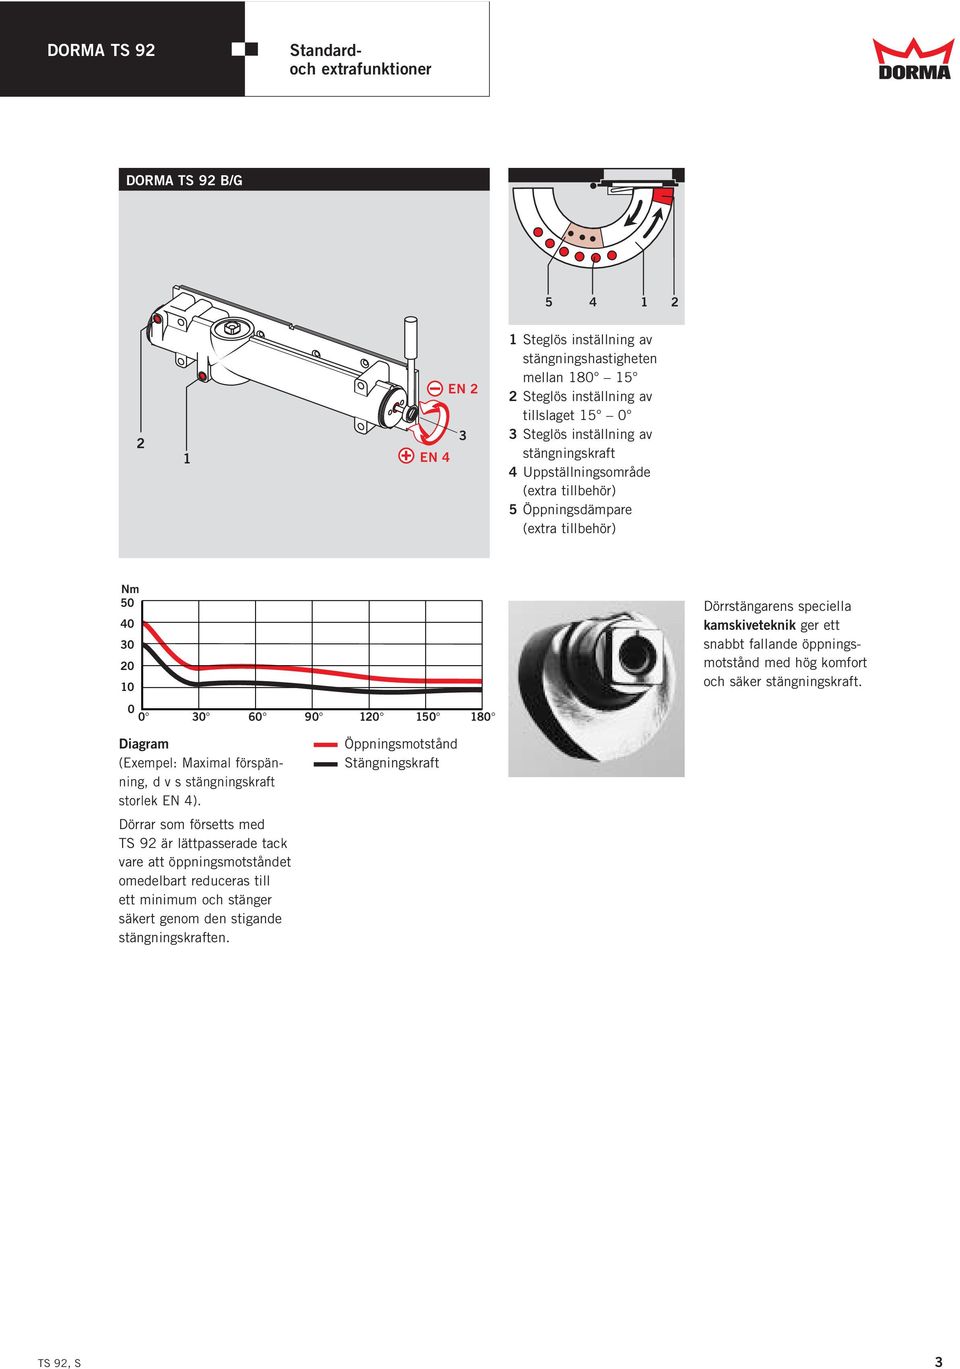 kamskiveteknik ger ett snabbt fallande öppningsmotstånd med hög komfort och säker stängningskraft. Diagram (Exempel: Maximal förspänning, d v s stängningskraft storlek EN 4).